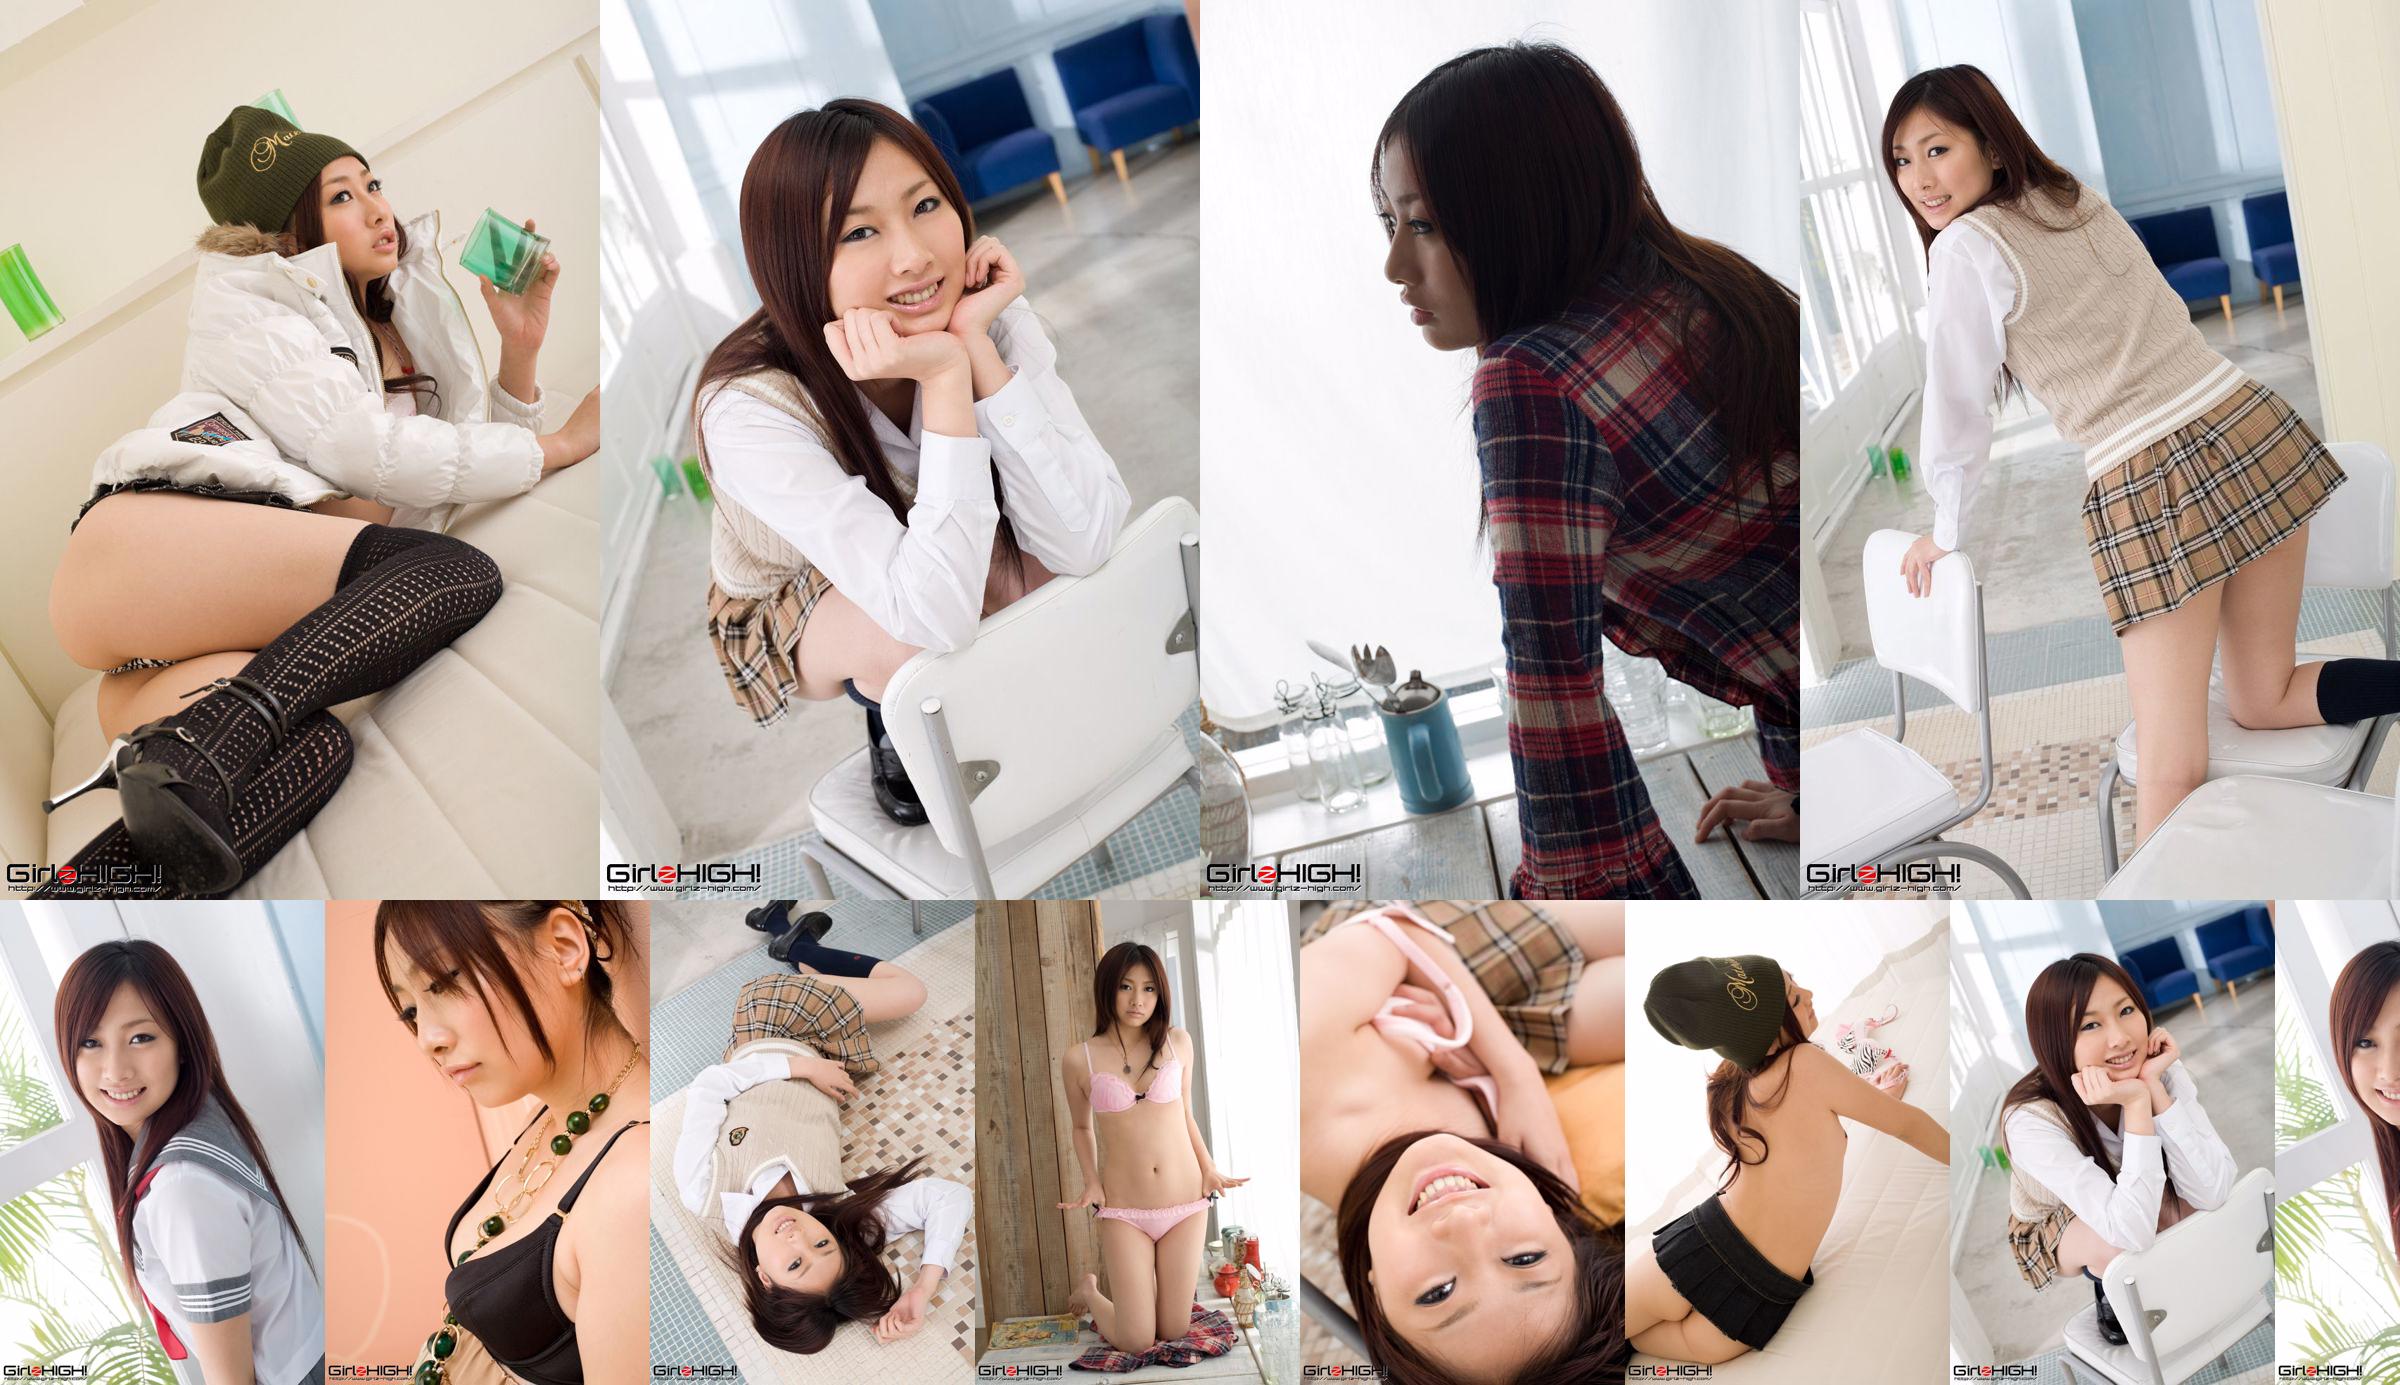 [Girlz-High] Miki Yasuda, 18 years old No.f945a9 Page 3